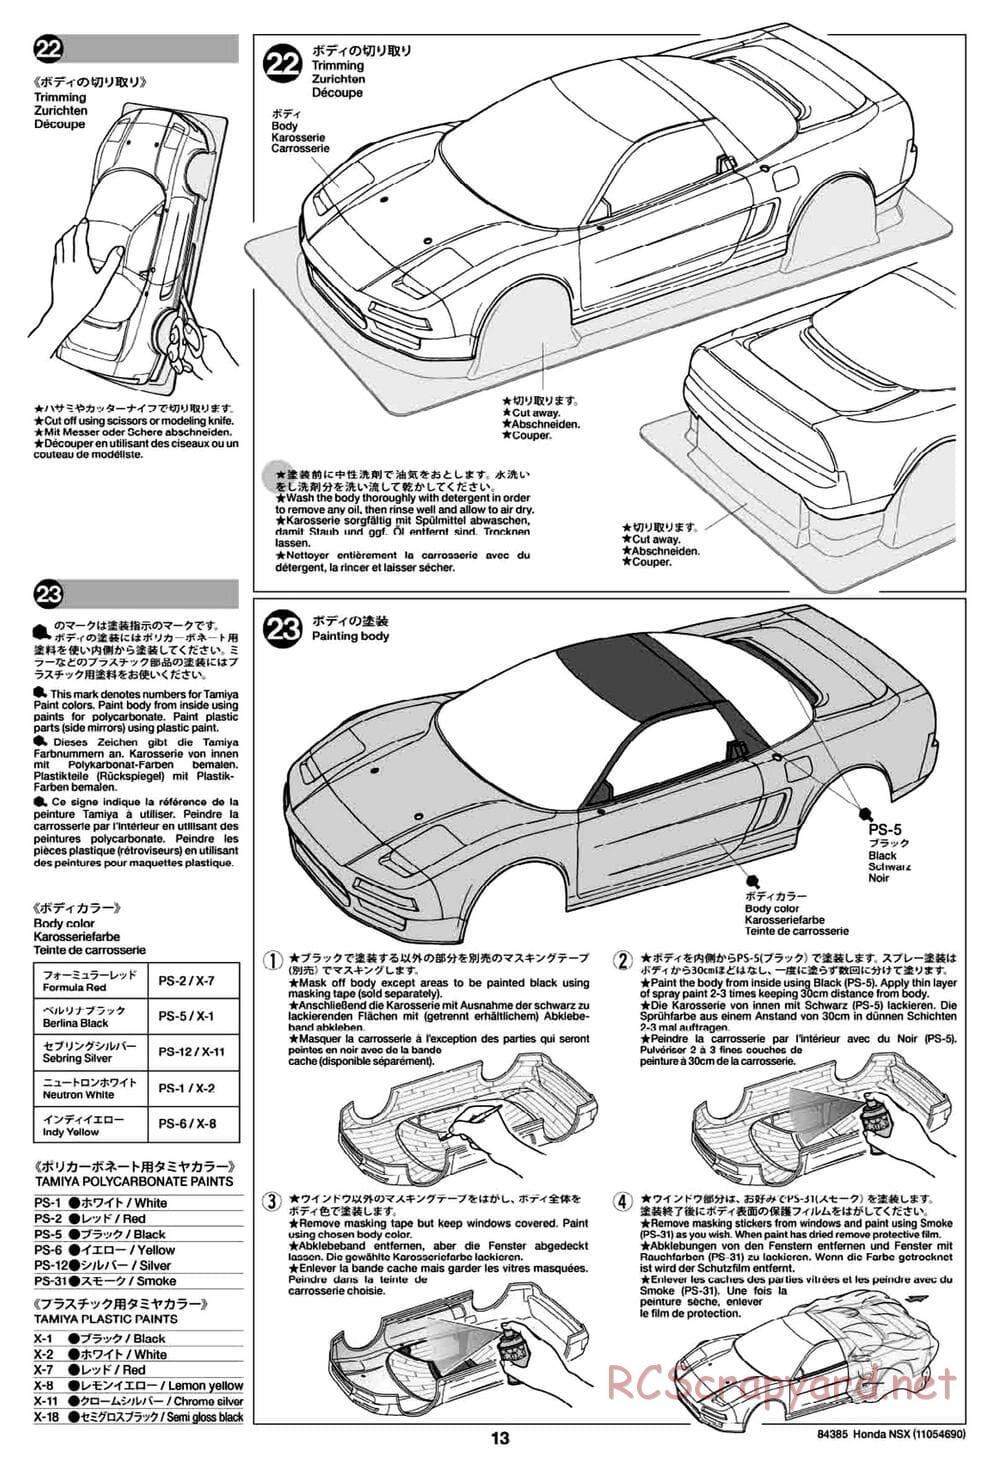 Tamiya - Honda NSX - Group-C Chassis - Manual - Page 13